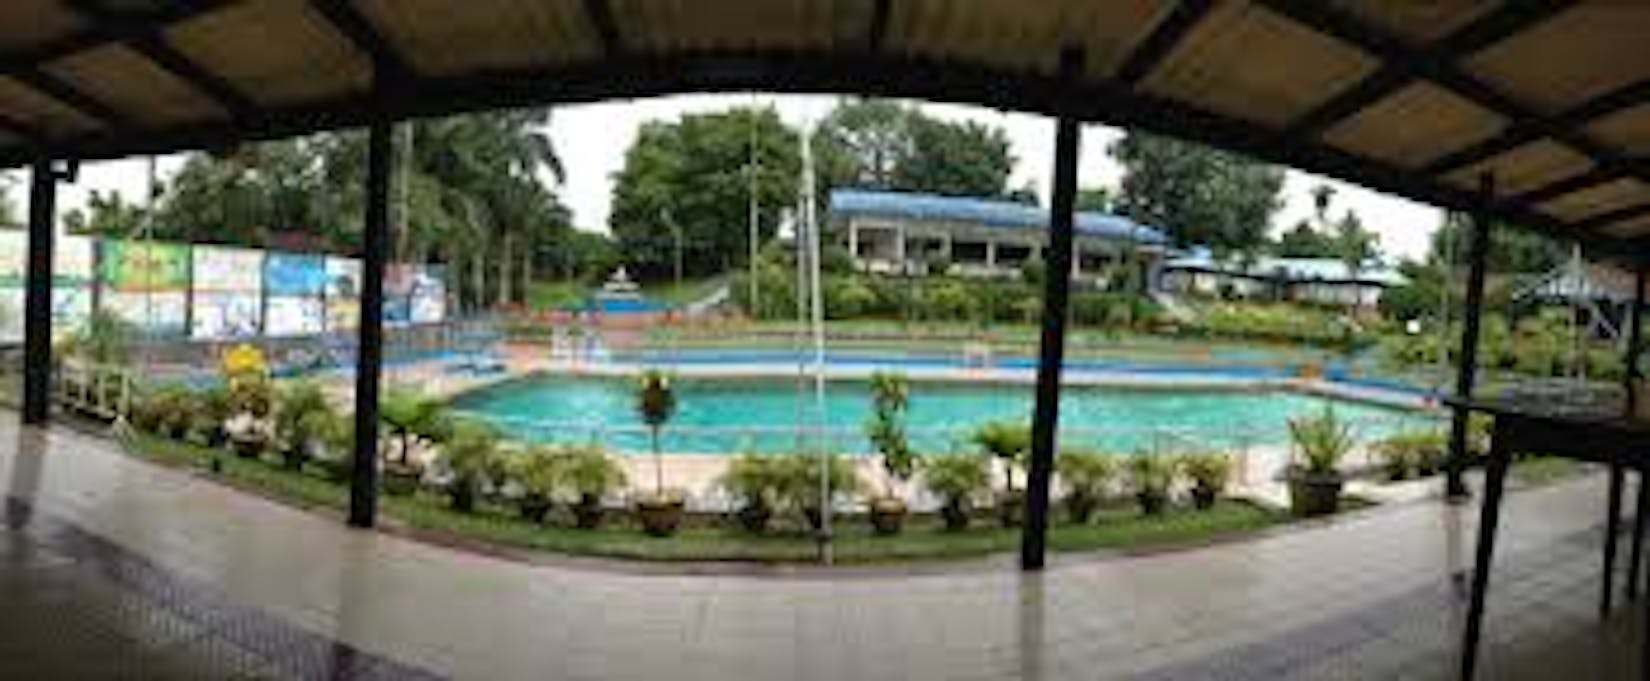 Kokkine Swimming Pool 1 | Beauty